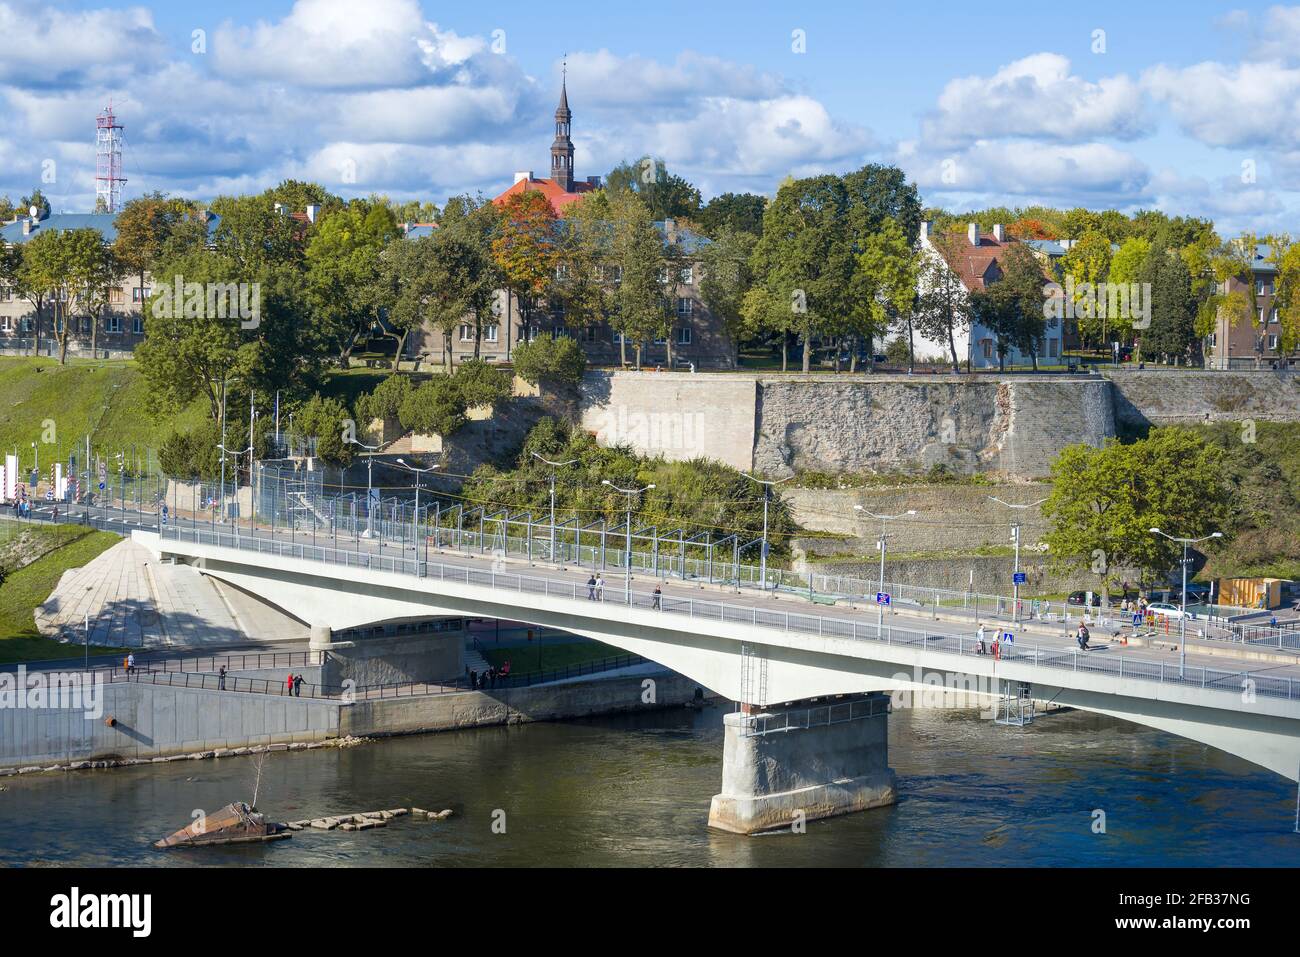 NARVA, ESTLAND - 27. SEPTEMBER 2015: Grenzbrücke der Freundschaft vor dem Hintergrund des Stadtbildes an einem sonnigen Septembertag Stockfoto